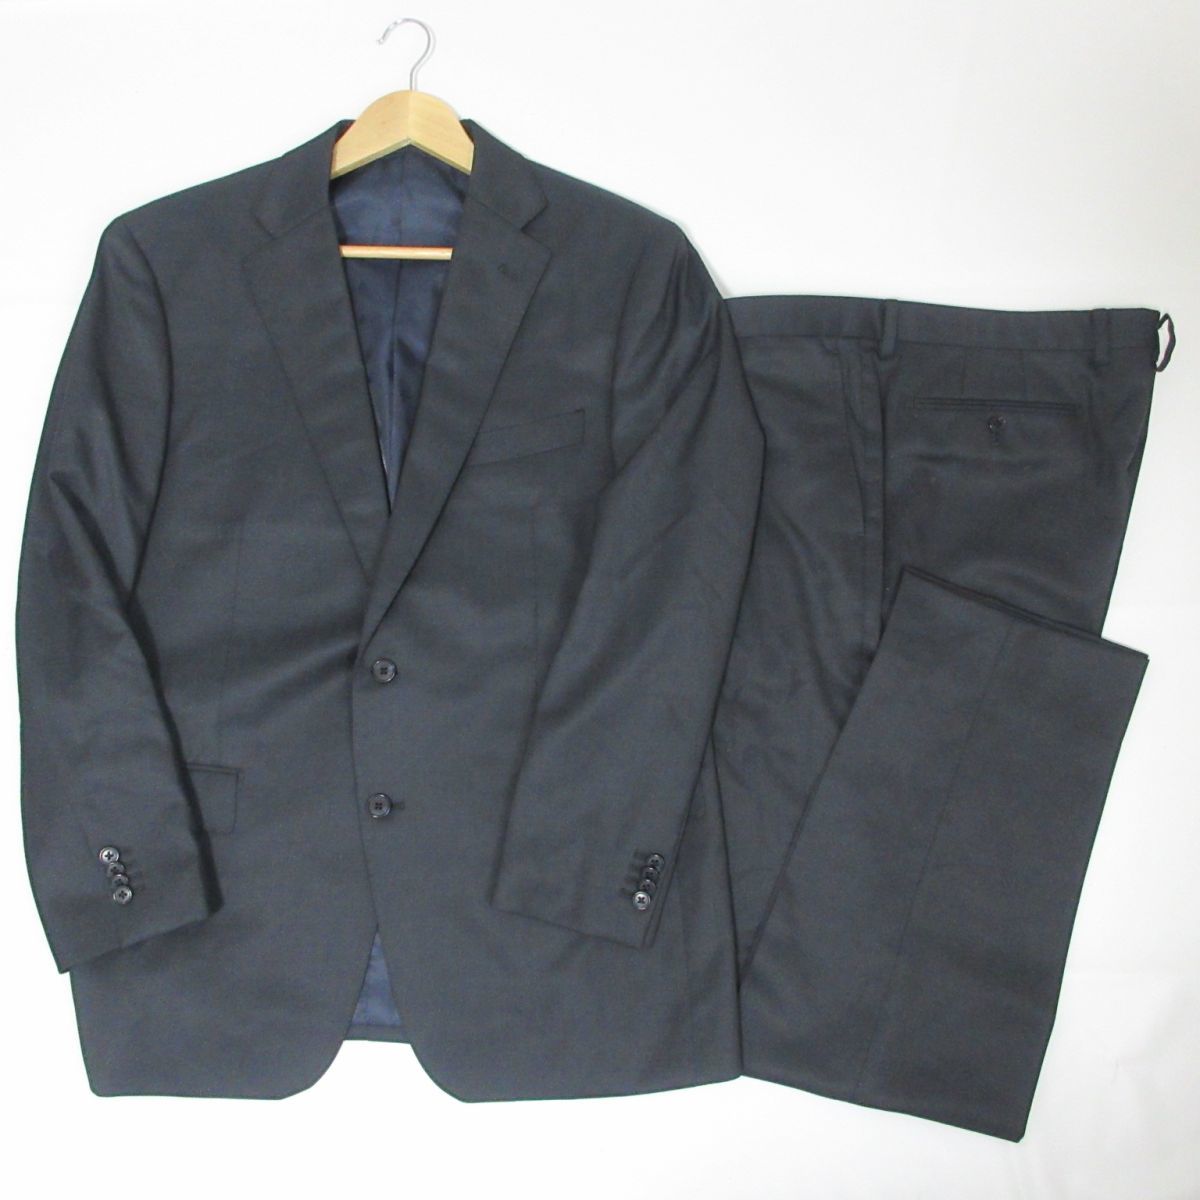 未使用品 THE SUIT COMPANY ザスーツカンパニー スーツ セットアップ テーラードジャケット スラックス パンツ 180cm-2Drop 濃紺 1202